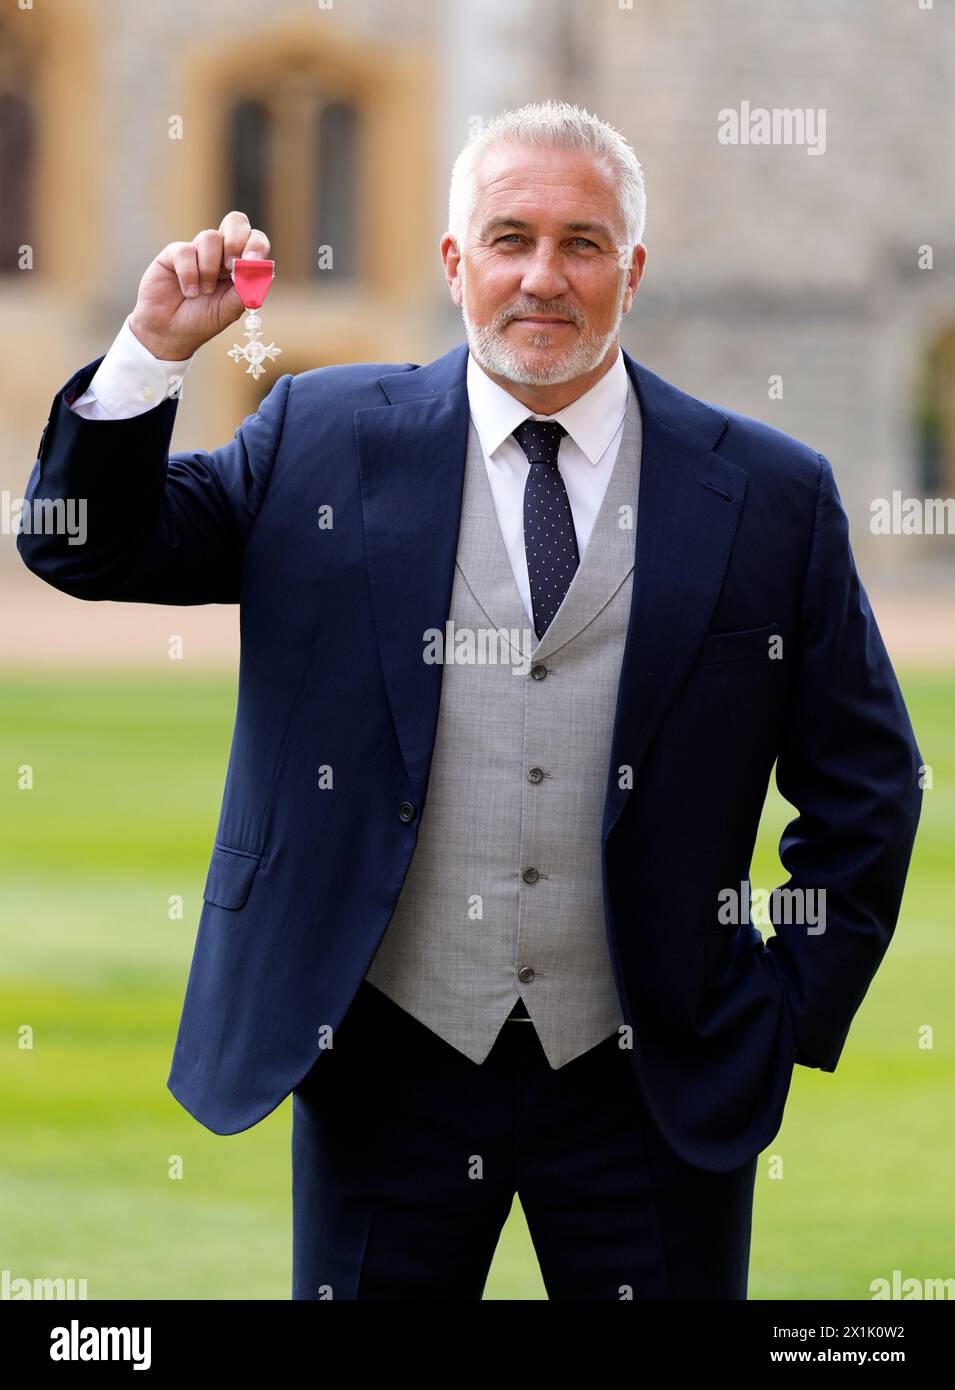 Paul Hollywood wurde Mitglied des Order of the British Empire (MBE) bei einer Einweihungszeremonie in Windsor Castle, Berkshire. Bilddatum: Mittwoch, 17. April 2024. Stockfoto